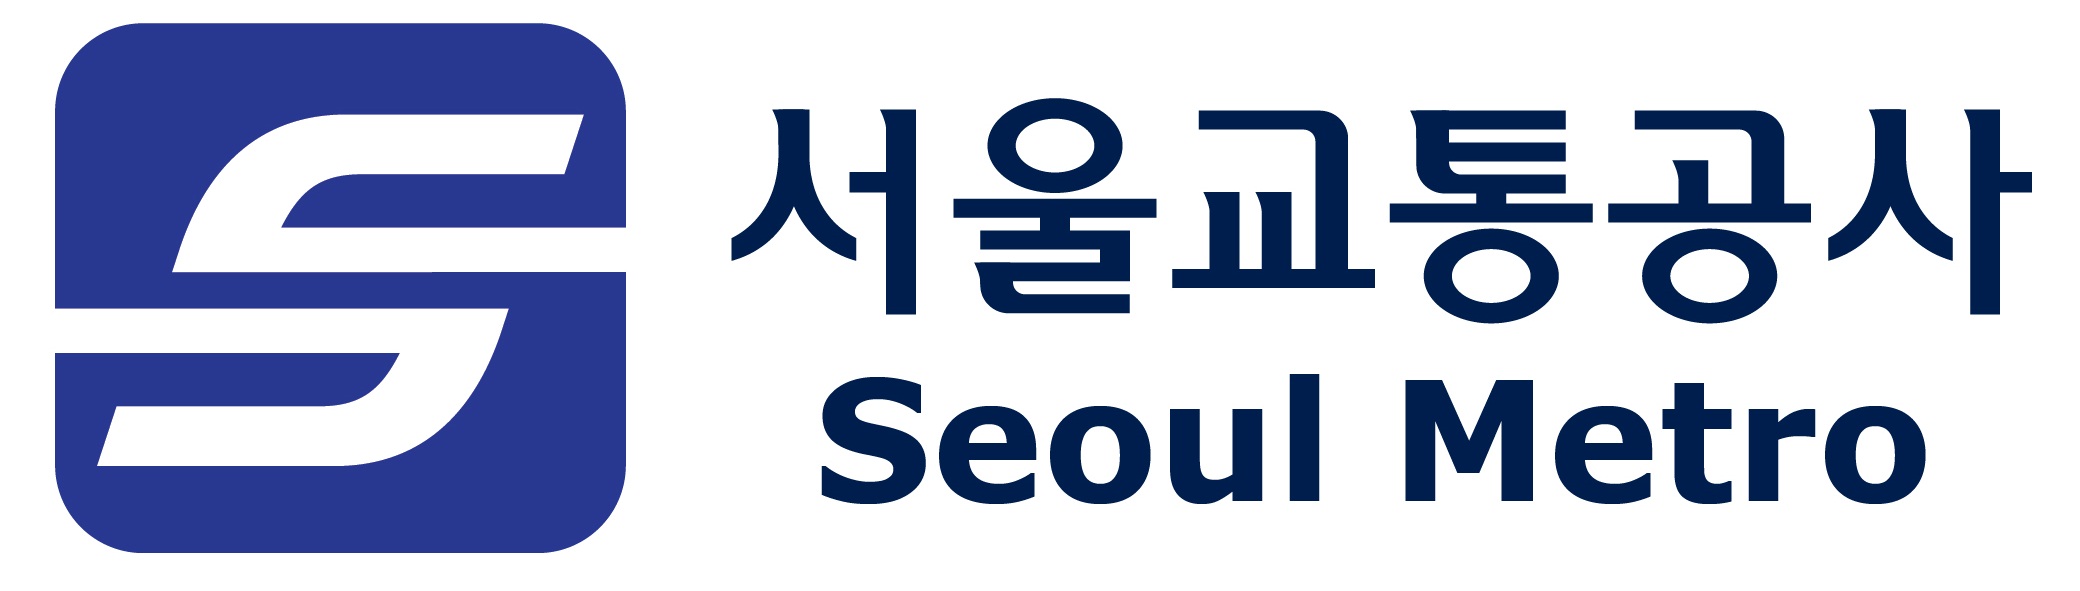 교통수단 이미지로 S(Safety, Service, Seoul 의미)를 표현하여 역동감을 전달하며, 서울을 움직이고 서울을 통하게 하는 공사 이미지를 구축